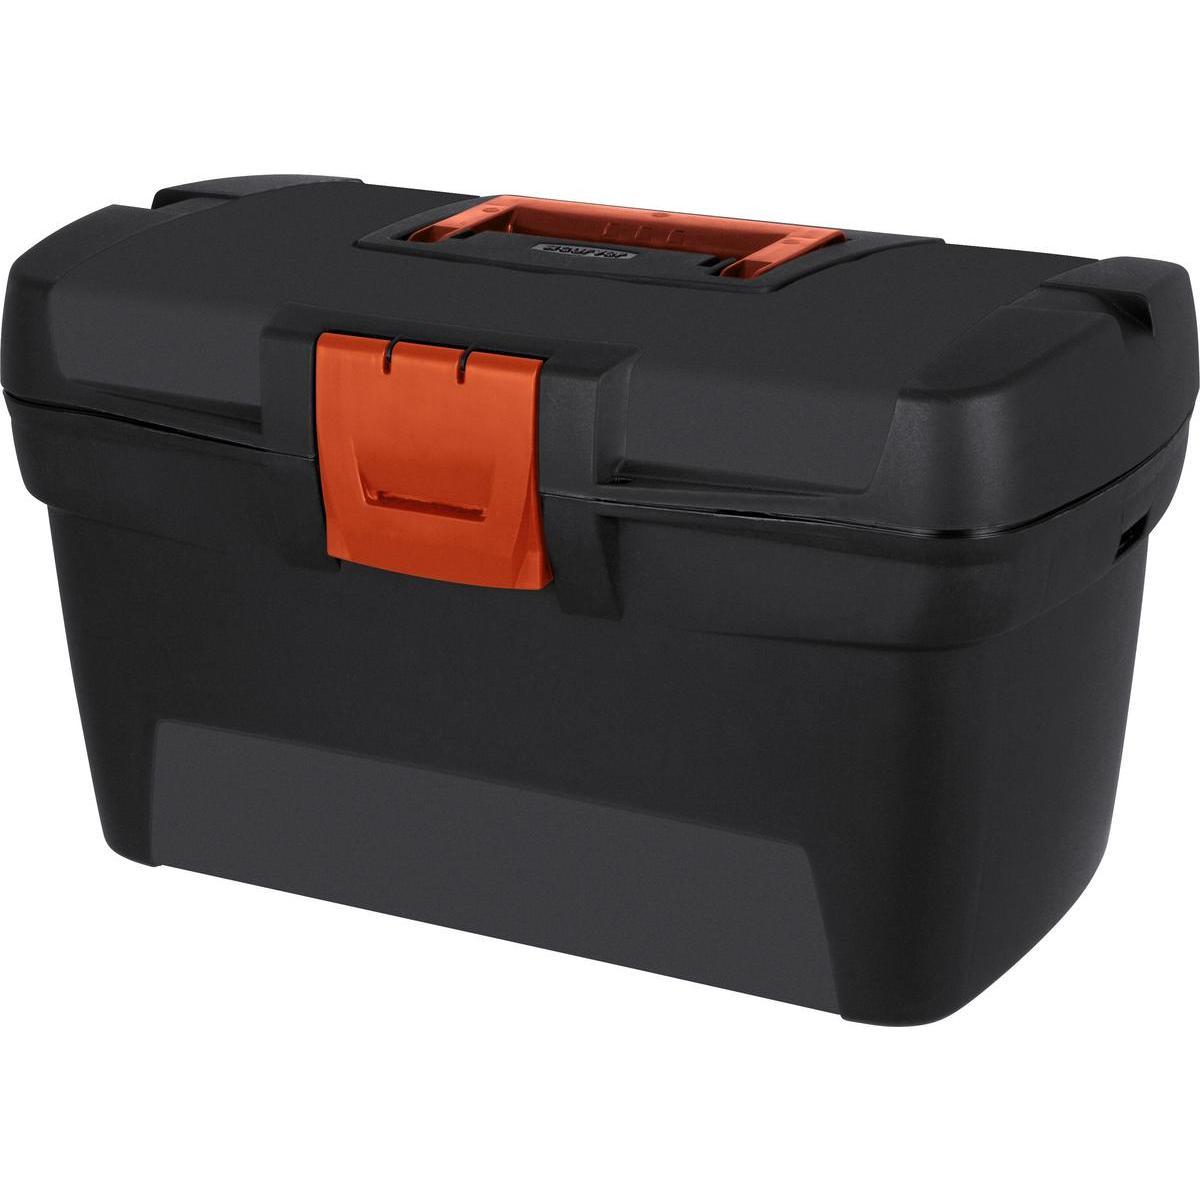 Boîte à outils Hero Box 16 - L 39.5 x H 22 x l 22.6 cm - Noir